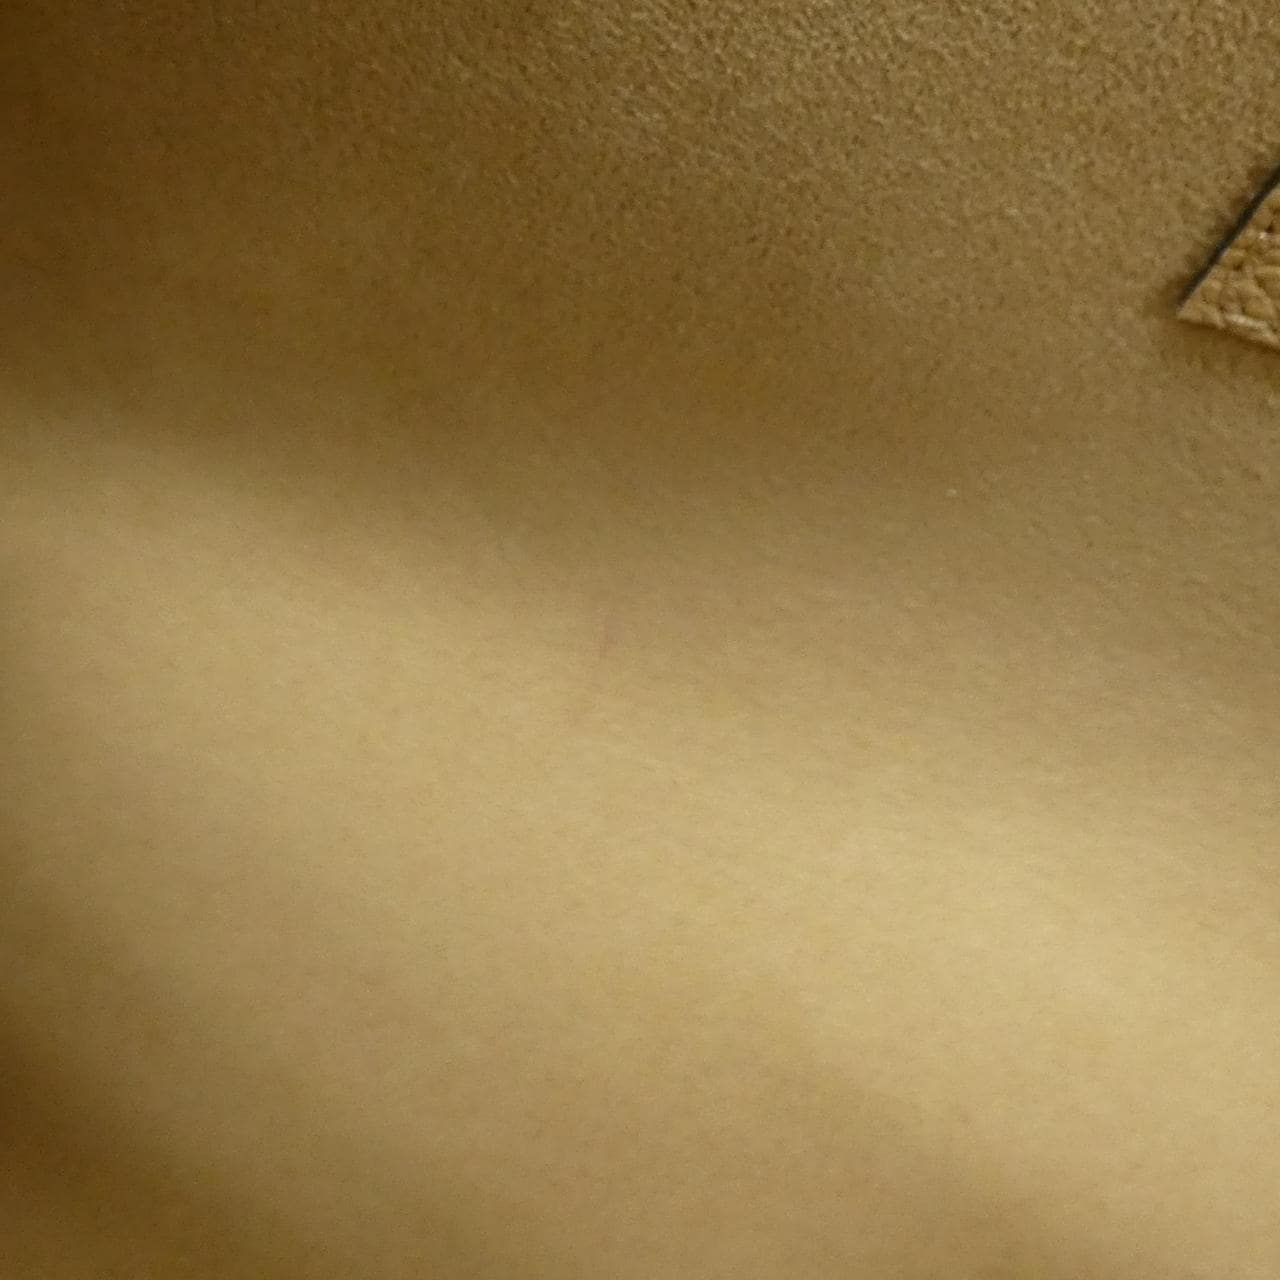 LOUIS VUITTON Monogram Empreinte Saint Germain PM M48932 Shoulder Bag